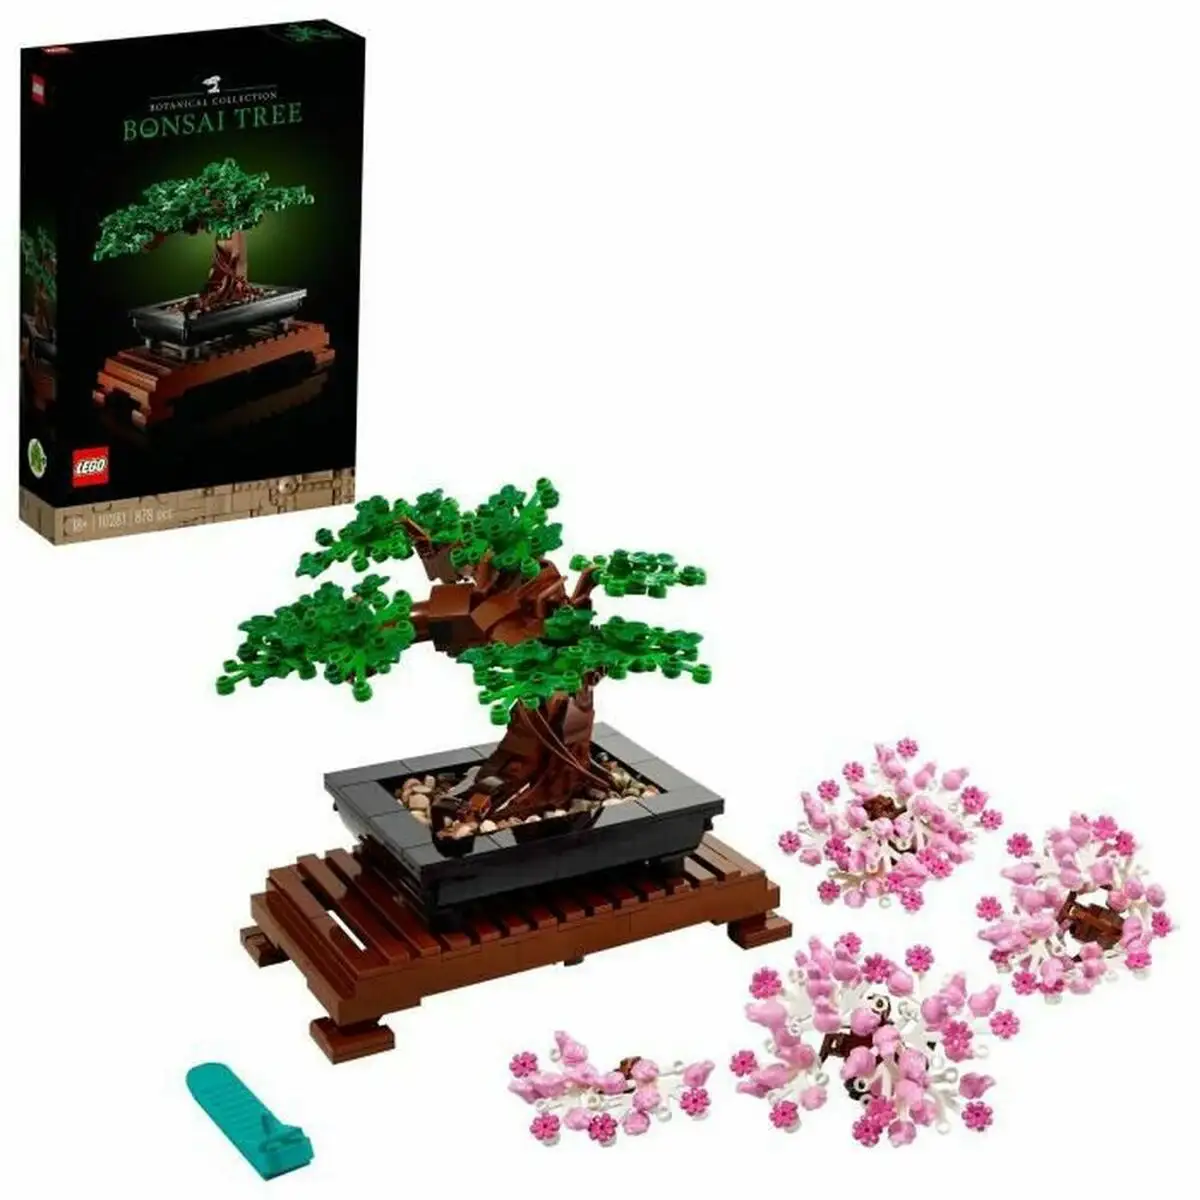 Playset lego creator expert 10281 bonsai_5271. Entrez dans l'Univers de DIAYTAR SENEGAL - Où Choisir est un Voyage. Explorez notre gamme diversifiée et trouvez des articles qui répondent à tous vos besoins et envies.